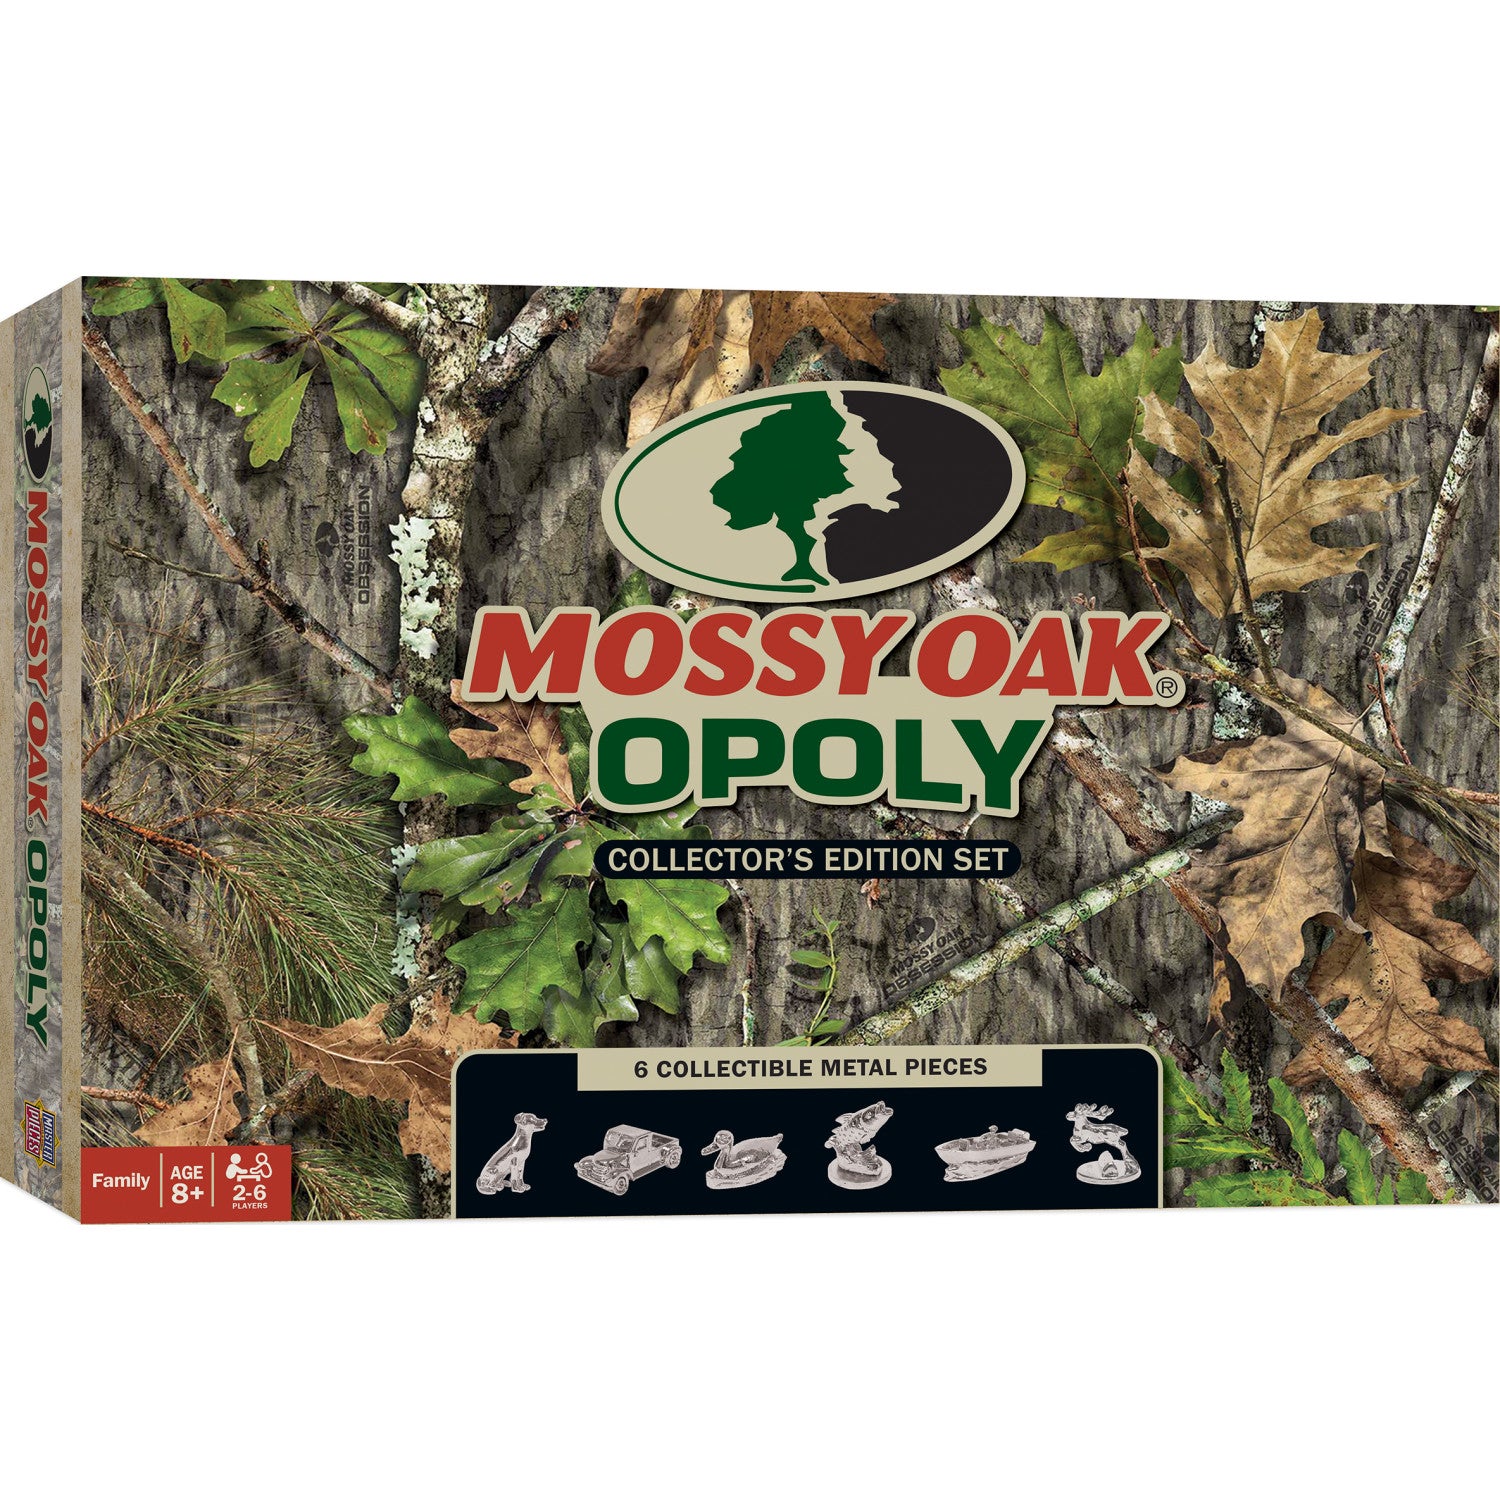 Mossy Oak Opoly